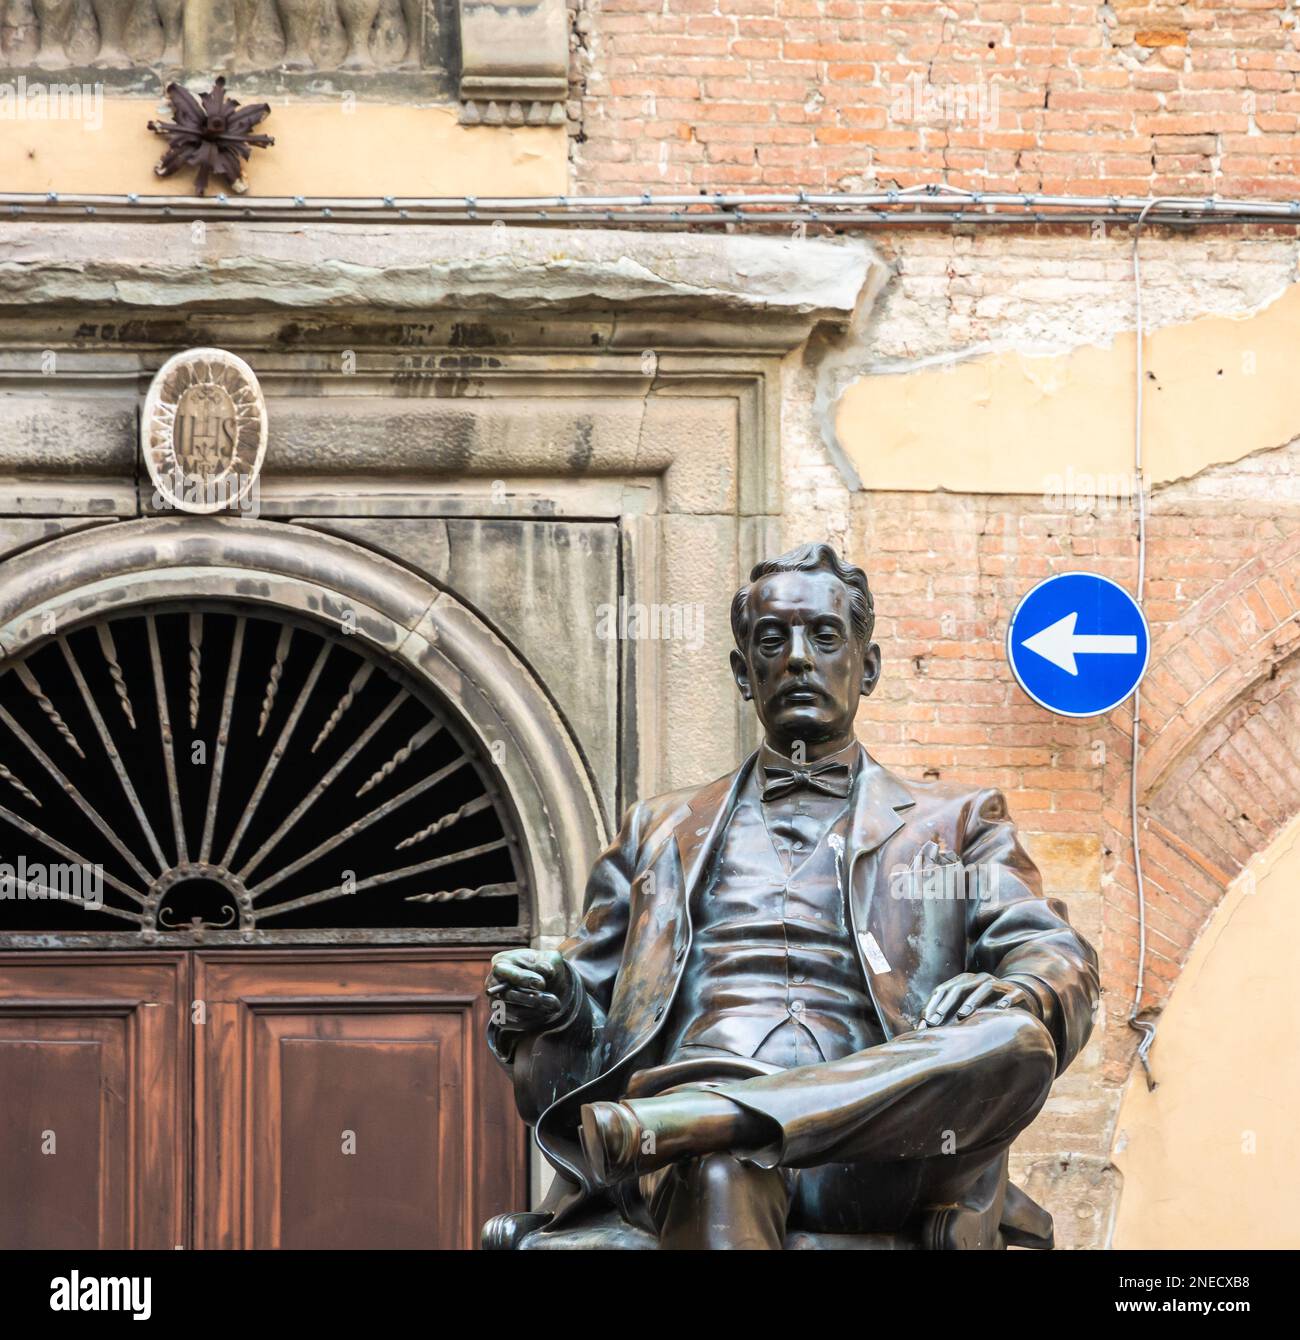 Statua del famoso compositore italiano Giacomo Puccini in piazza Cittadella, Lucca città in Toscana, Italia centrale, Europa Foto Stock